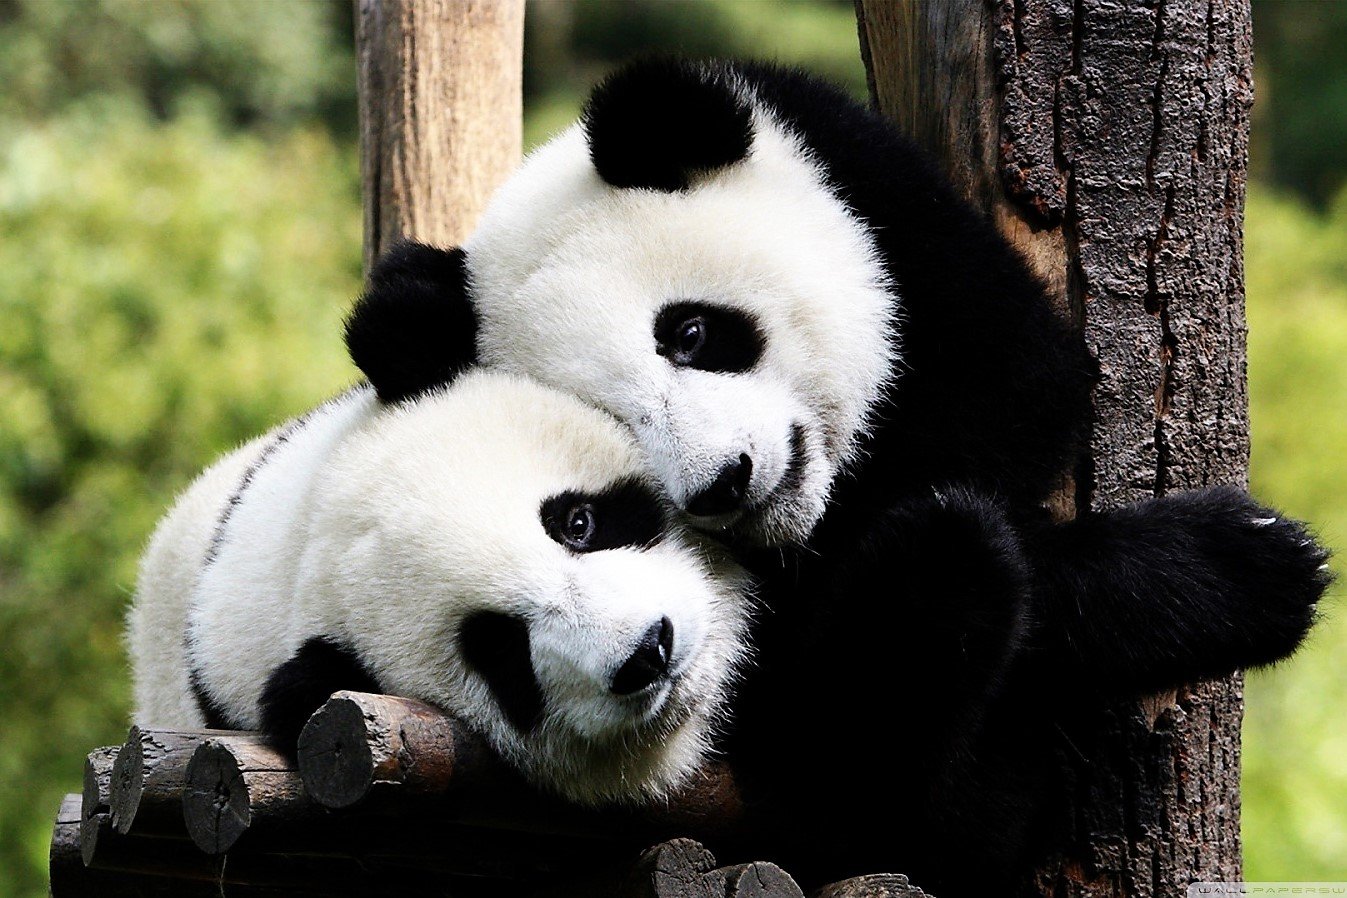 How to hug a panda in Chengdu